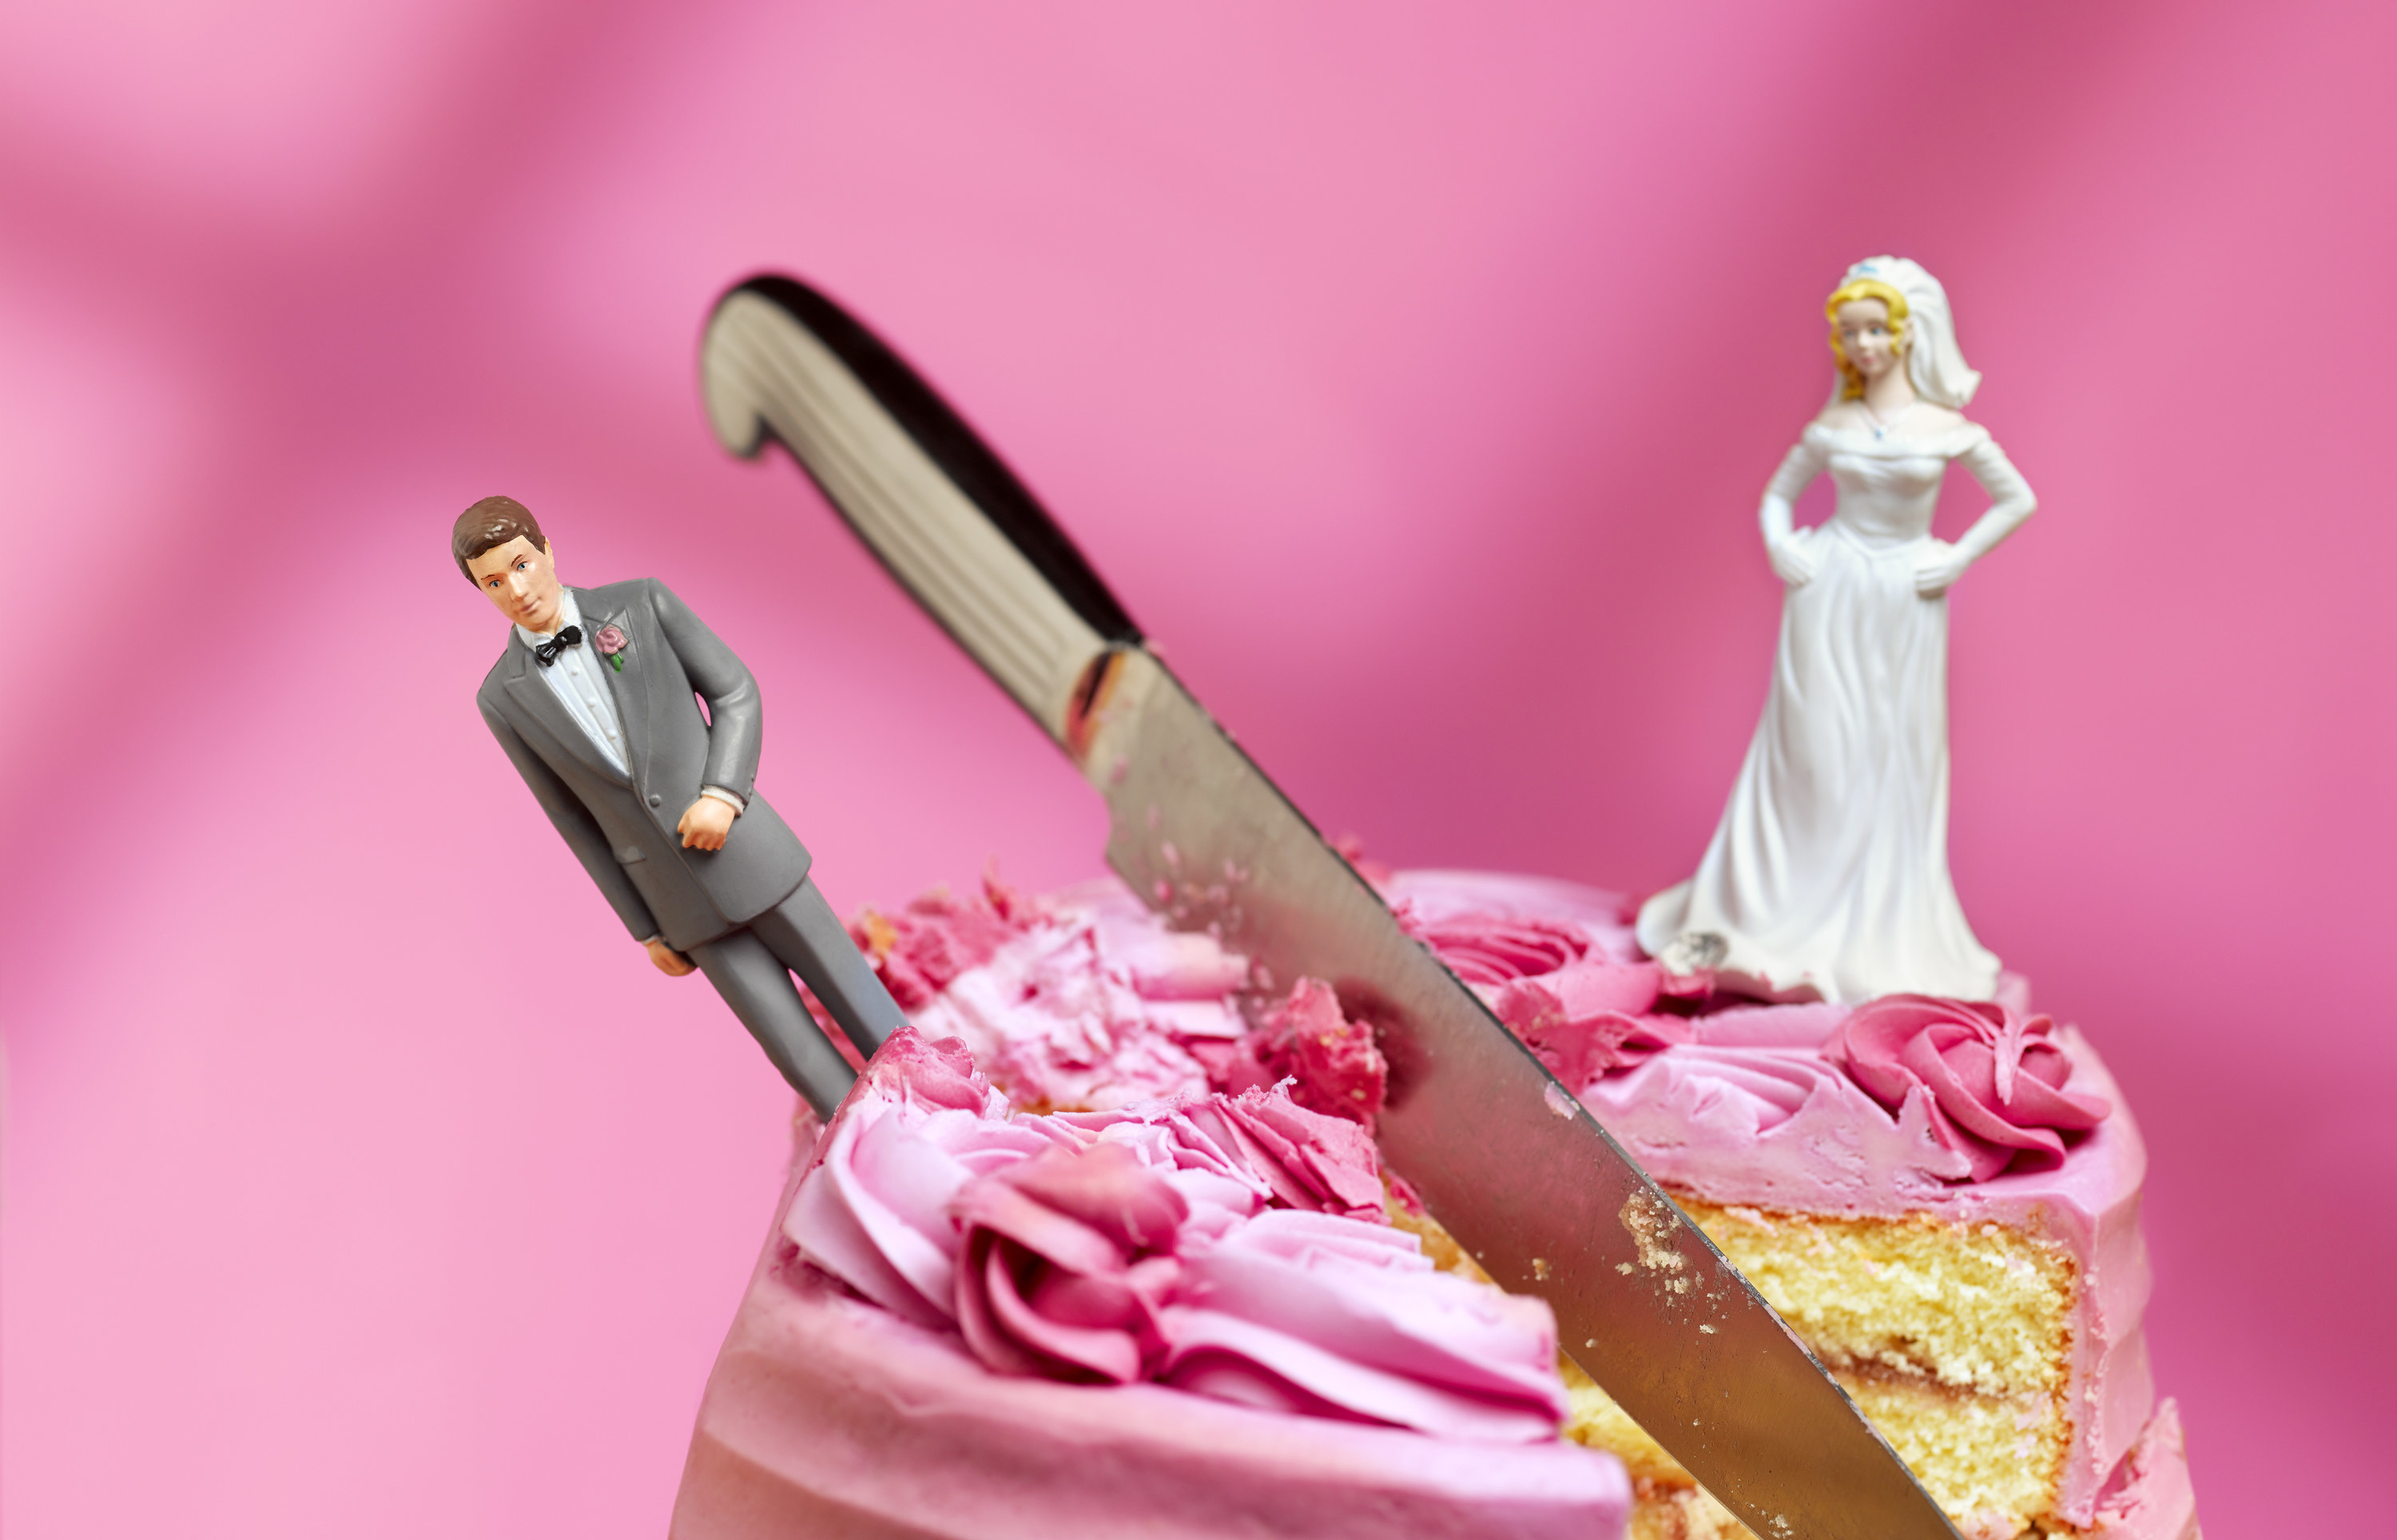 a wedding cake being cut in half